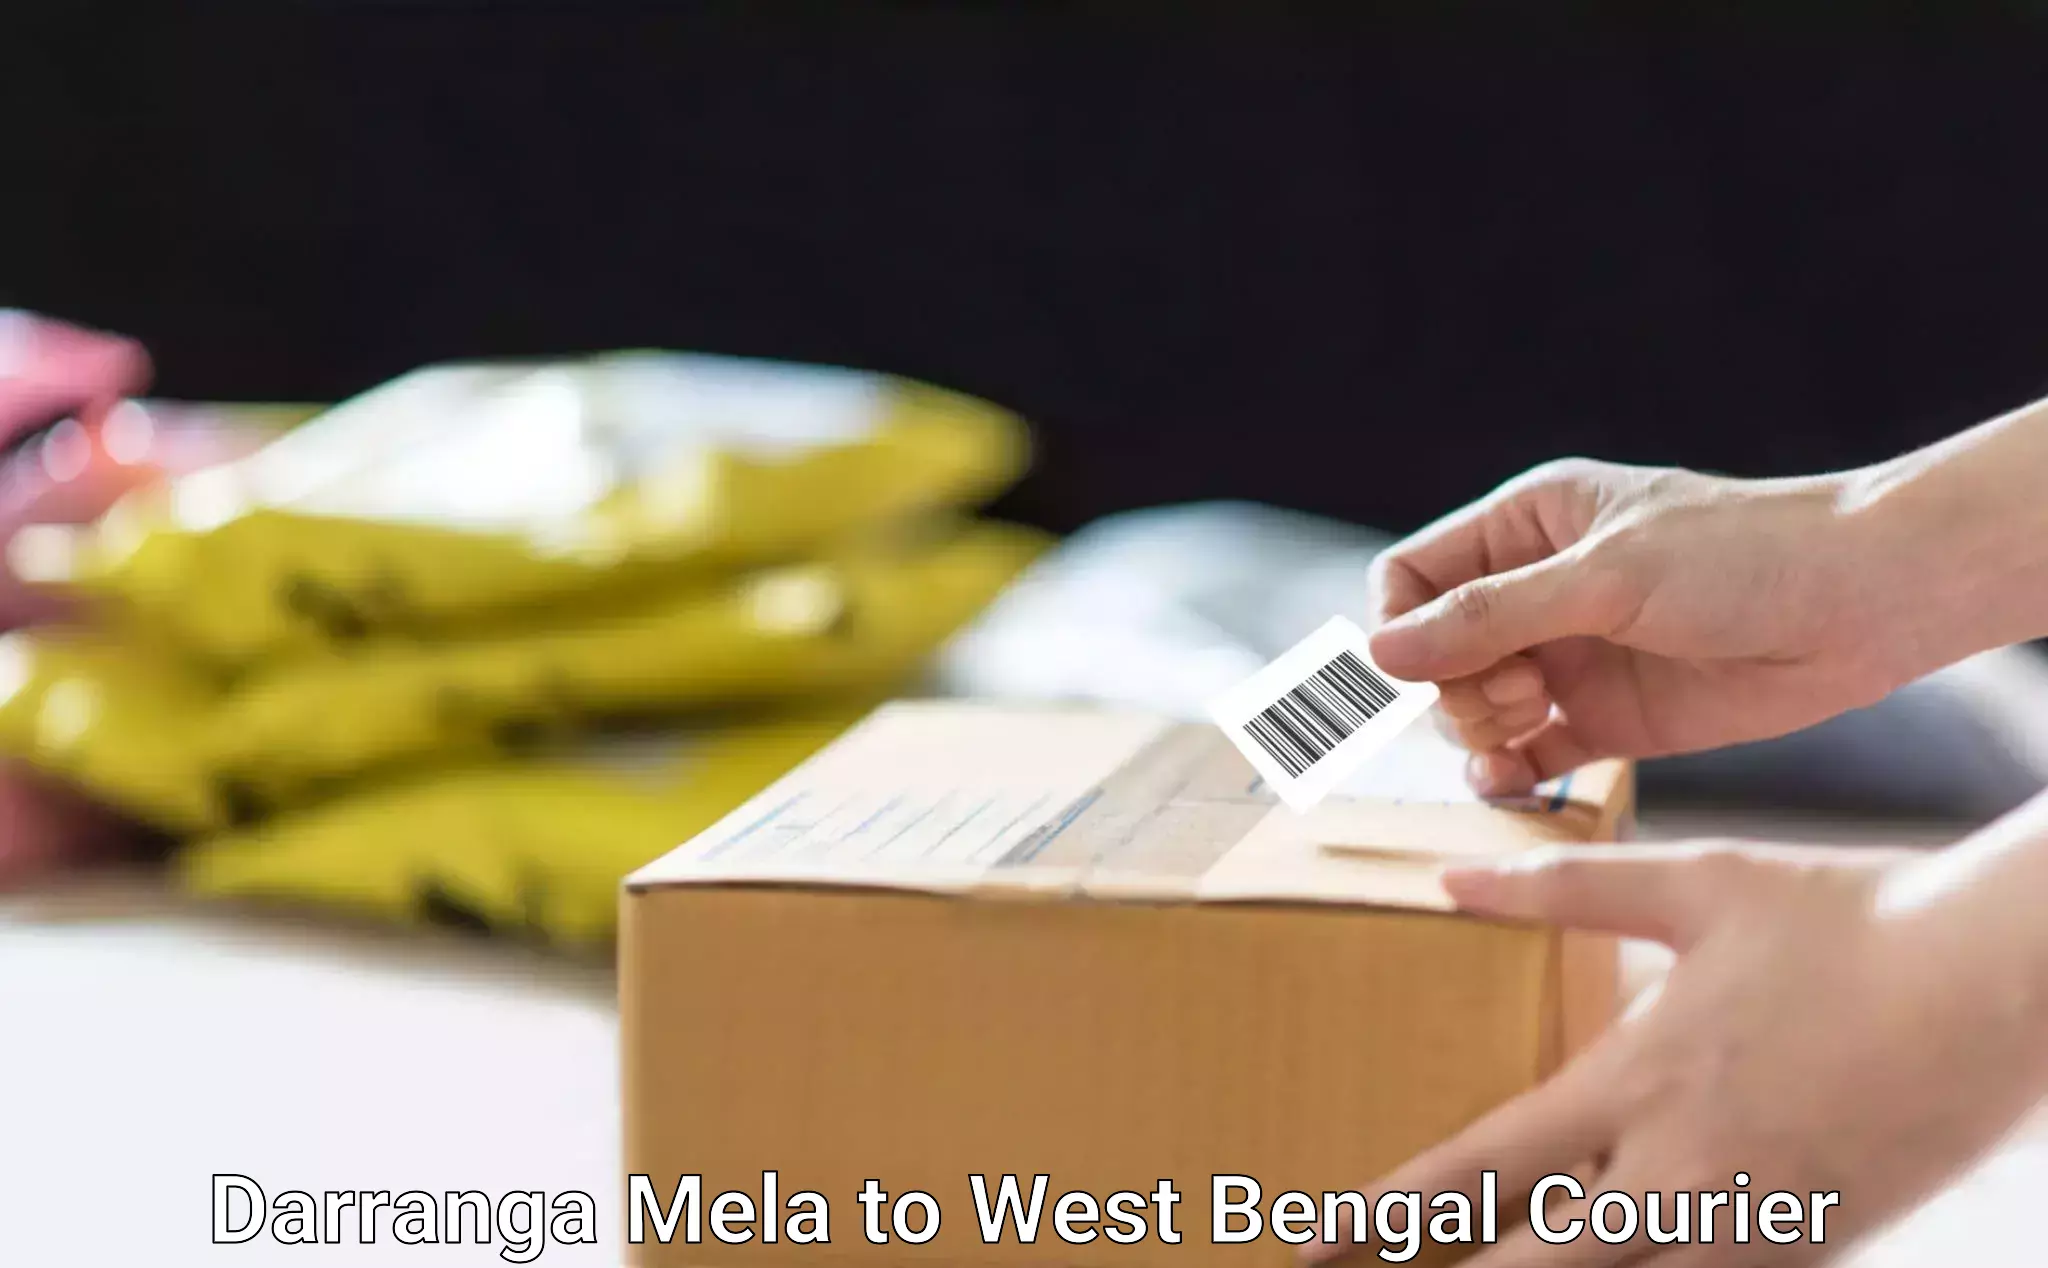 Next-generation courier services Darranga Mela to Sonamui